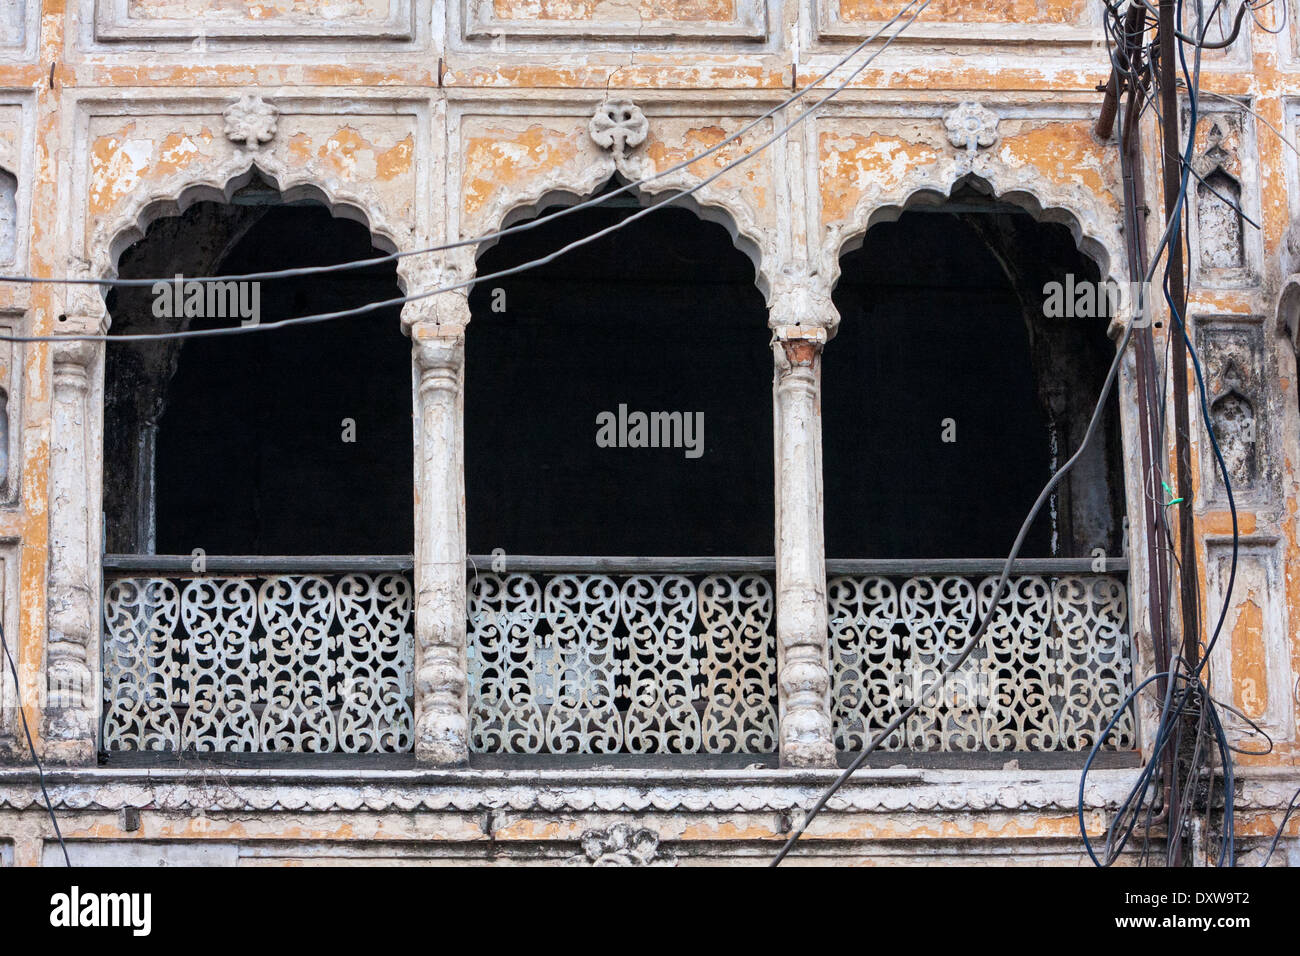 Indien, Dehradun. Traditionelle Architektur, mit Bögen, Säulen und Gitter-Arbeit. Stockfoto